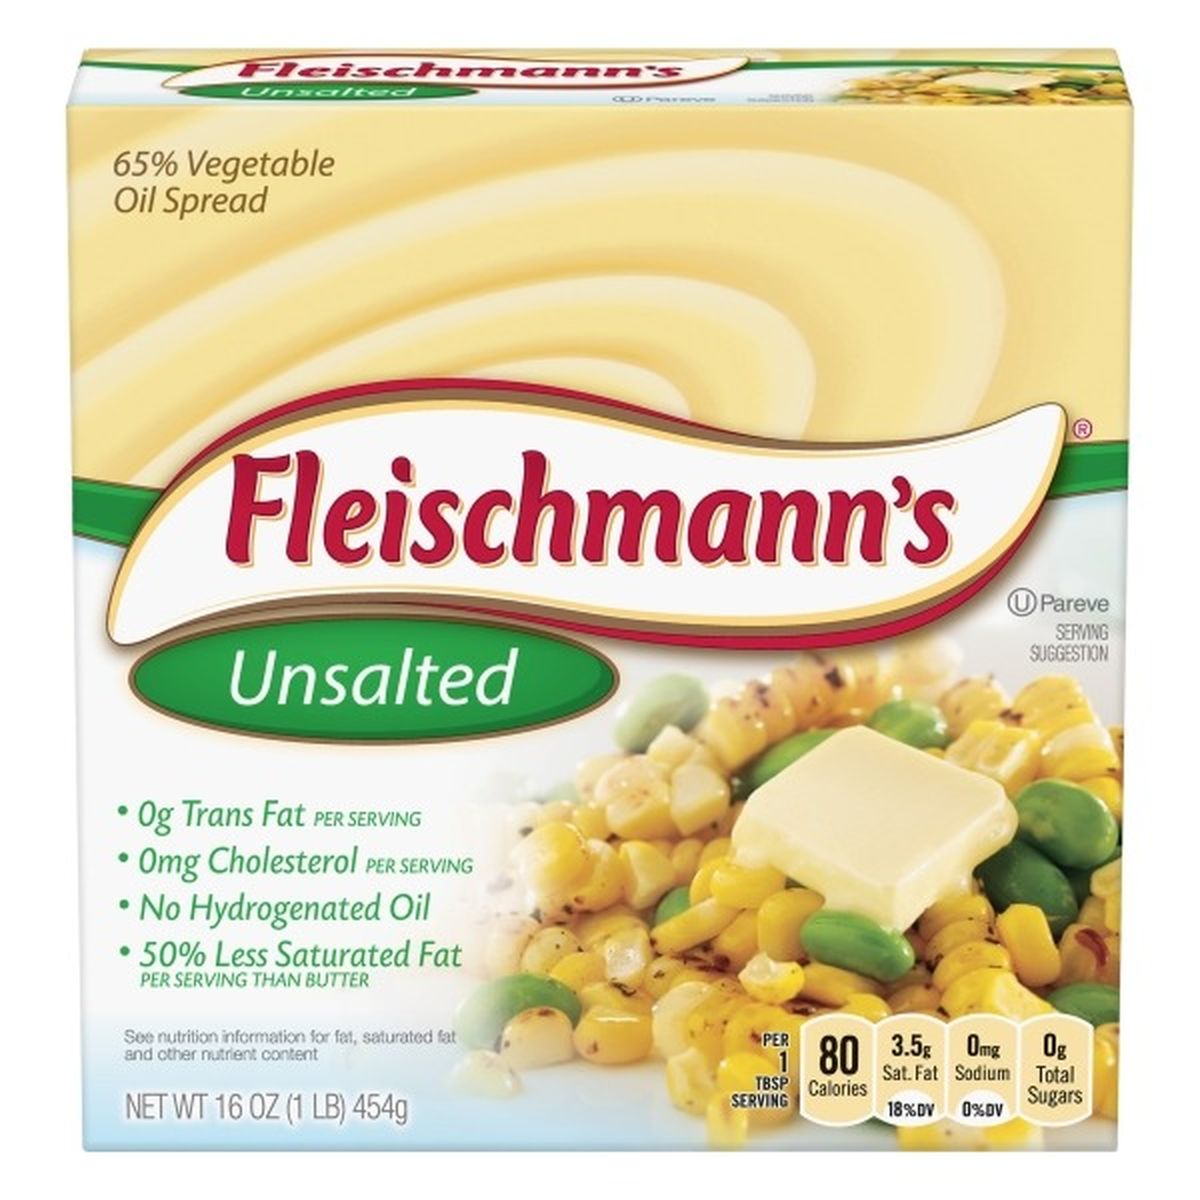 Calories in Fleischmann's Vegetable Oil Spread, Unsalted